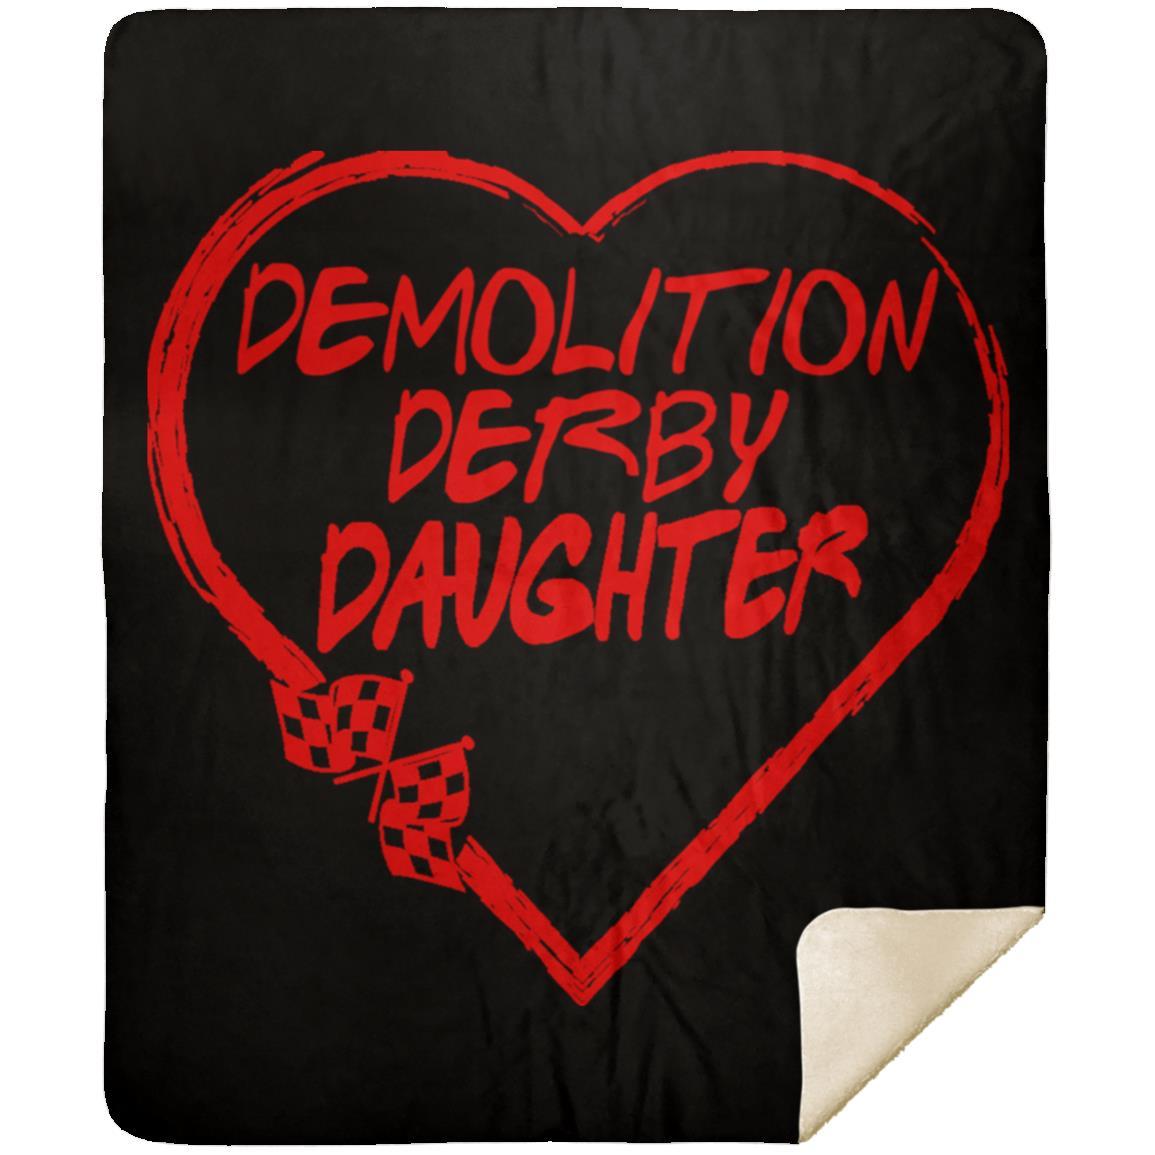 Demolition Derby Daughter Heart Premium Mink Sherpa Blanket 50x60